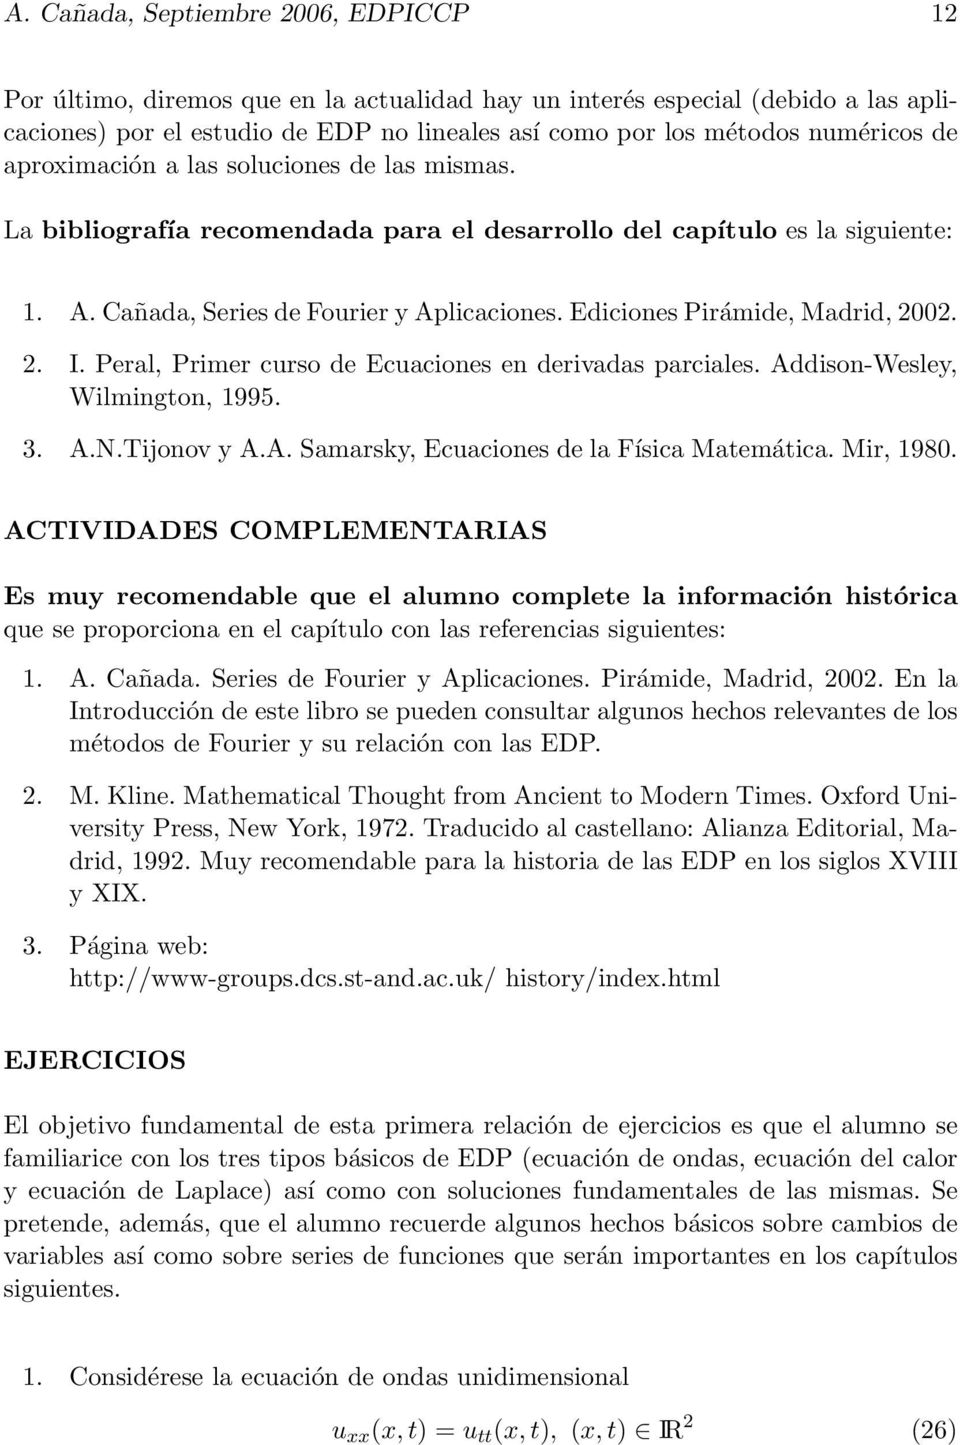 Ediciones Pirámide, Madrid, 2002. 2. I. Peral, Primer curso de Ecuaciones en derivadas parciales. Addison-Wesley, Wilmington, 1995. 3. A.N.Tijonov y A.A. Samarsky, Ecuaciones de la Física Matemática.